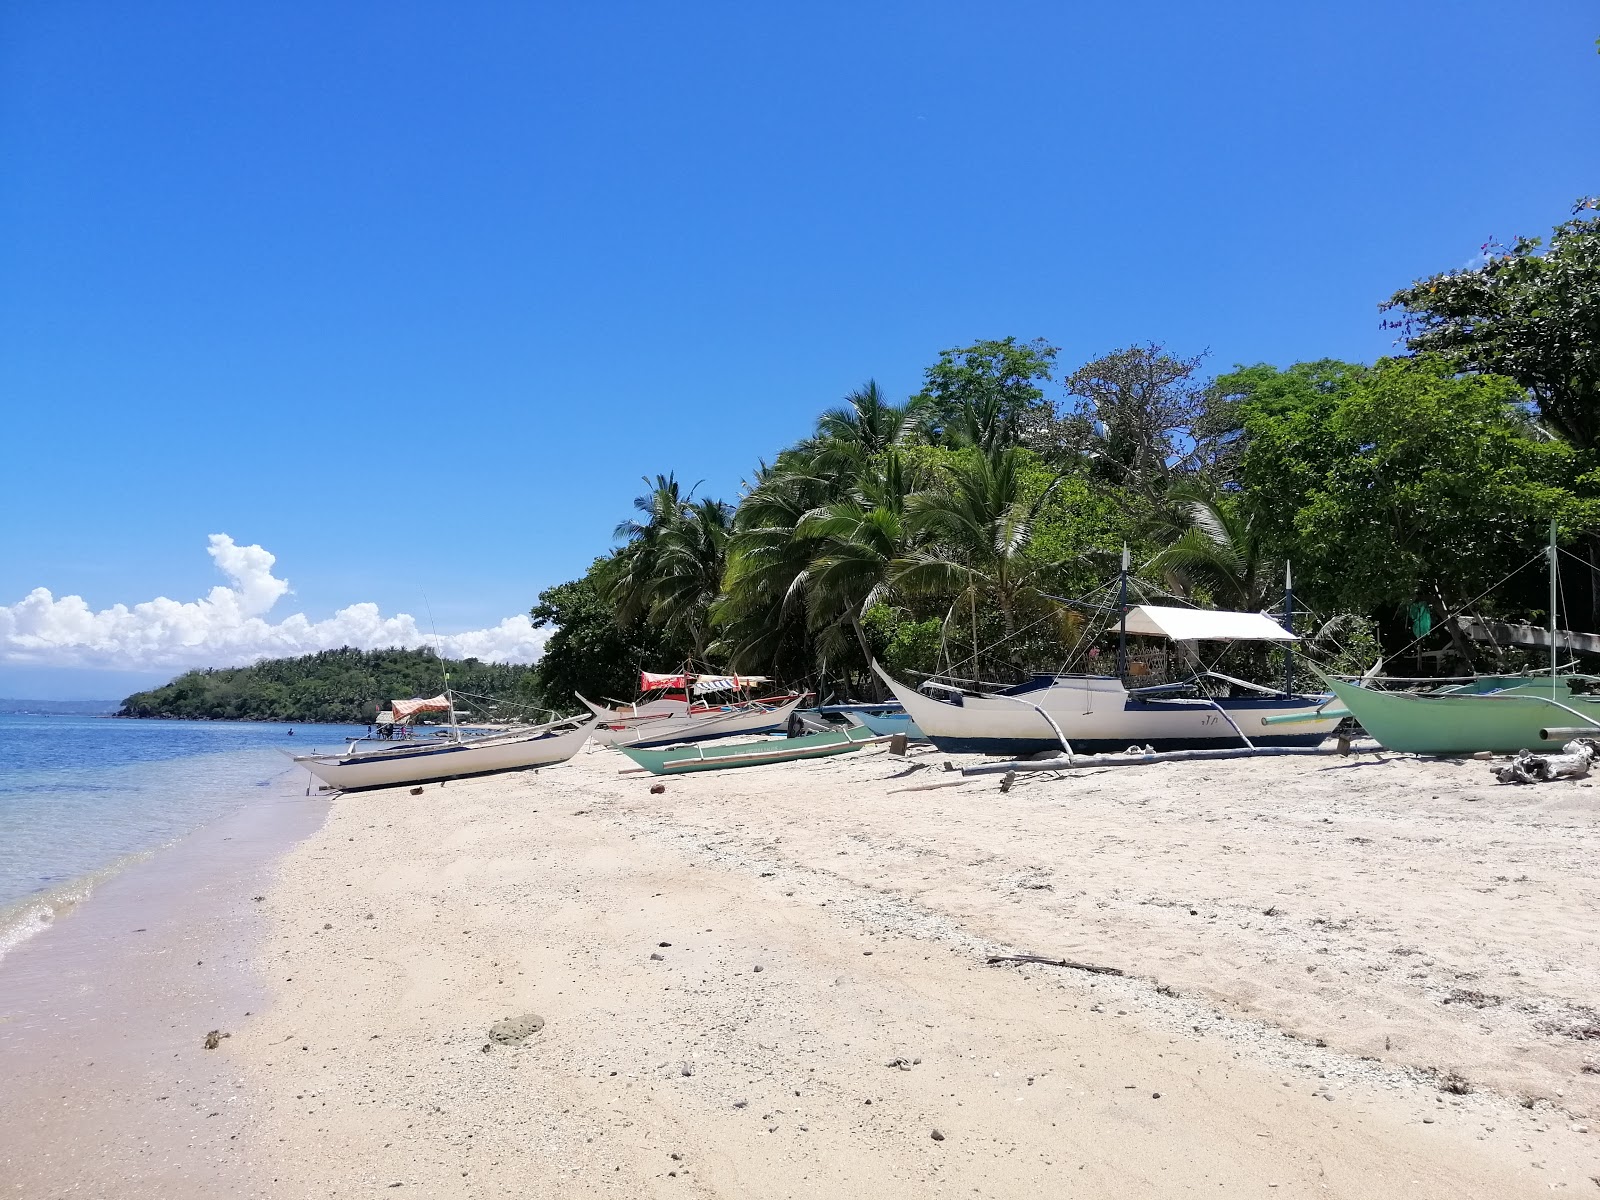 Fotografie cu Pili Beach - locul popular printre cunoscătorii de relaxare